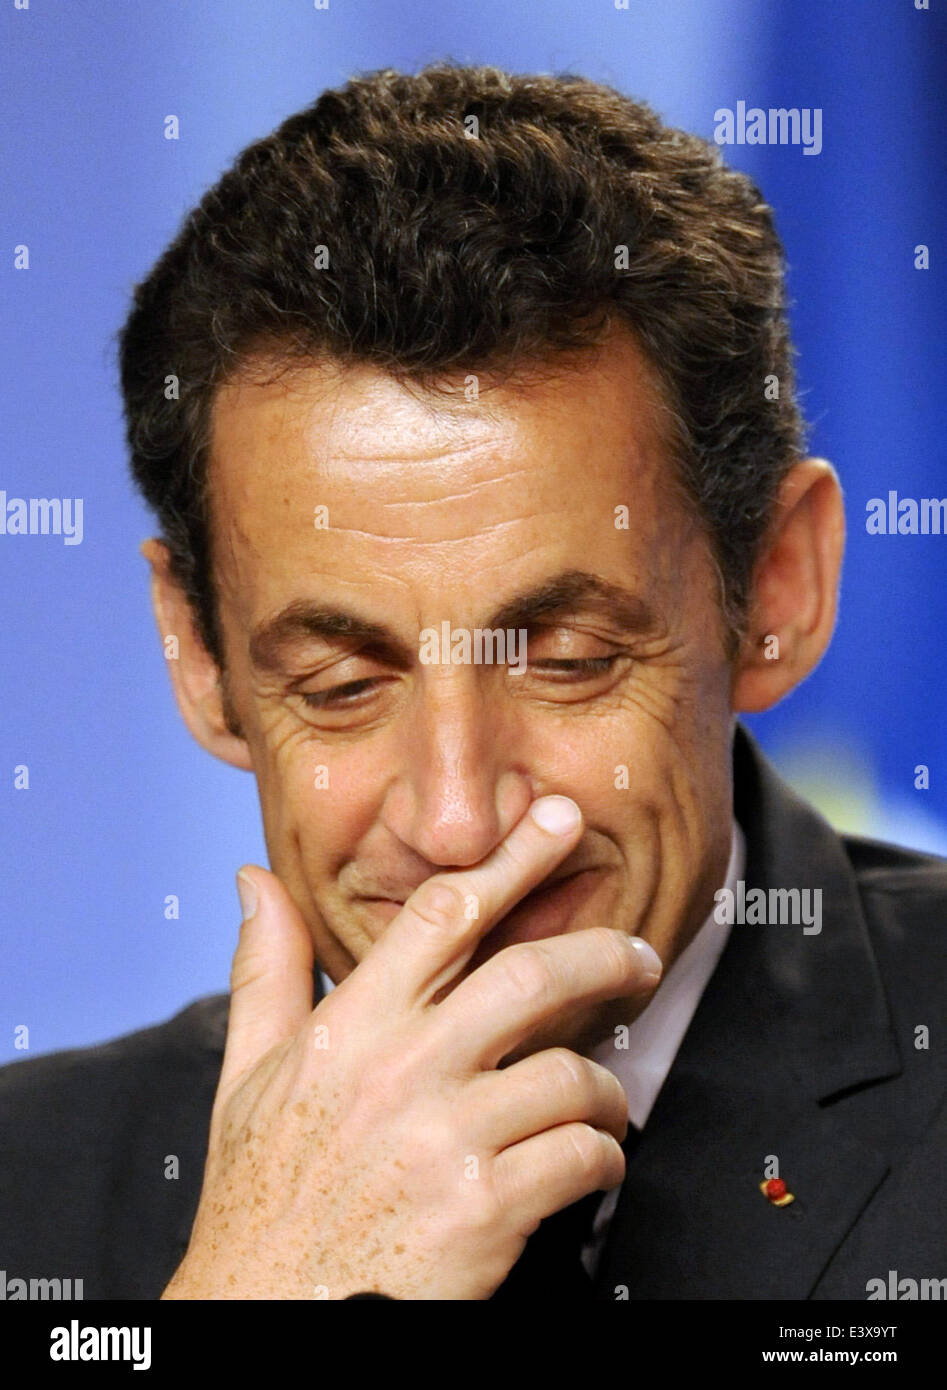 Straßburg, Frankreich. 4. April 2009. Der französische Präsident Nicolas Sarkozy grinst während einer Nachrichten Konferenz auf dem NATO-Gipfel 2009 in Strasbourg, Frankreich, 4. April 2009. Der Vertrag? s Gipfel zum 60. Jahrestag 2009 findet in Straßburg, Baden-Baden und Kehl, Deutschland am 03 und 4. April 2009. Foto: Dpa/Bernd Weissbrod/Alamy Live News Stockfoto